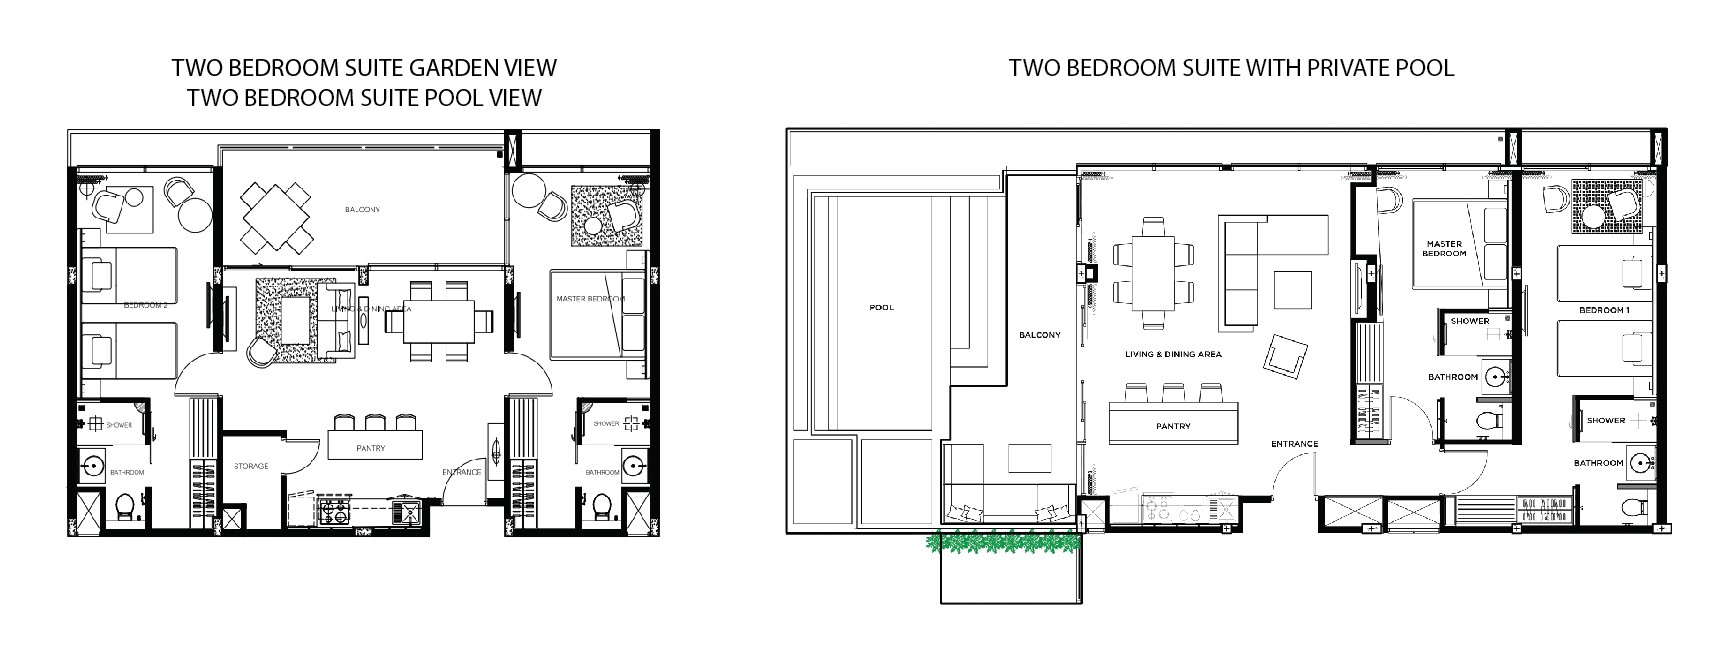 Floorplan : 2 bedroom Suite